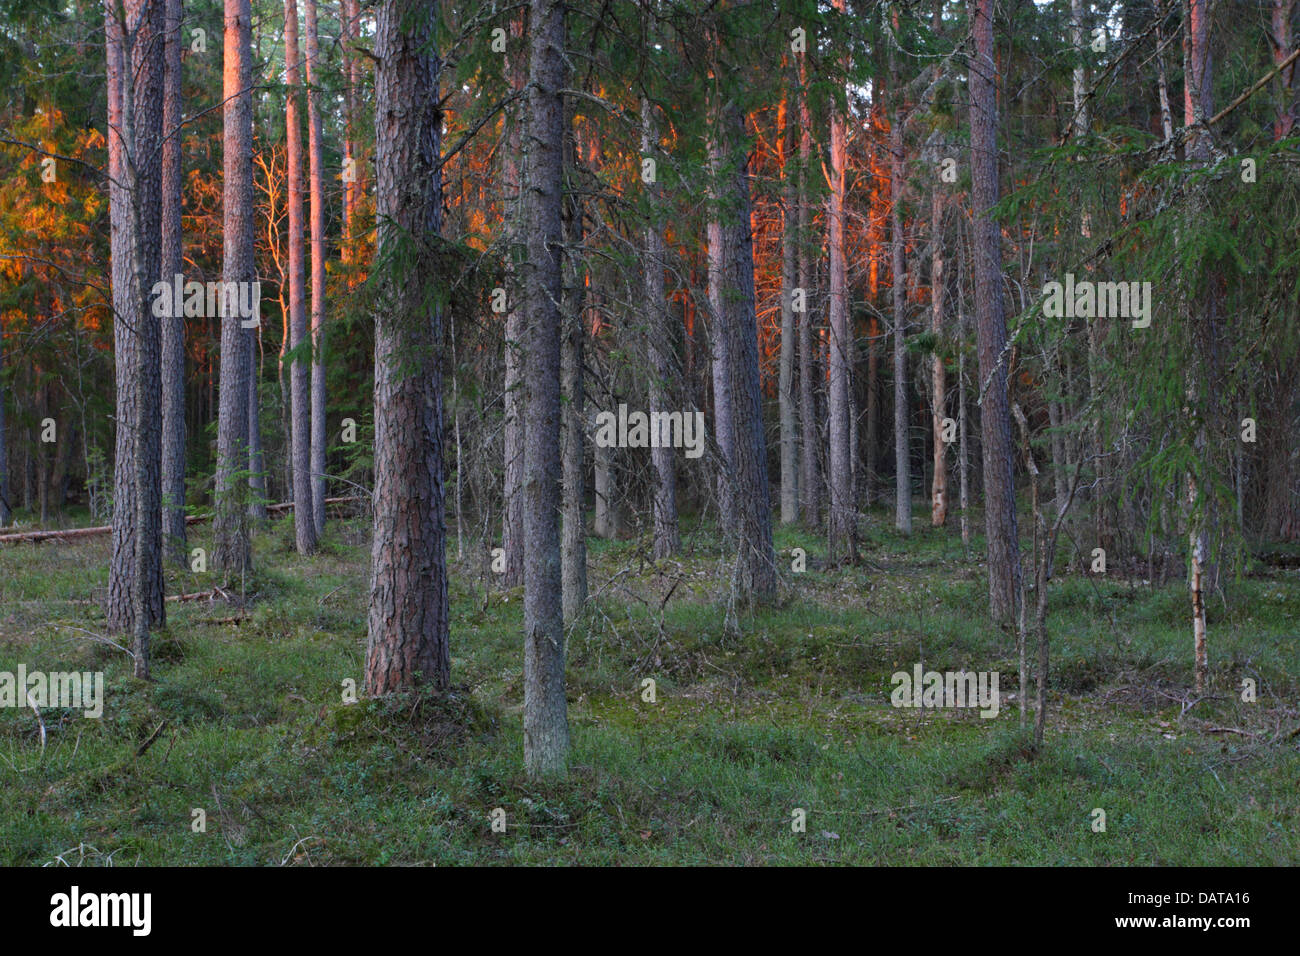 Vieille forêt vierge, Alam-Pedja réserve naturelle, l'Estonie, Europe Banque D'Images